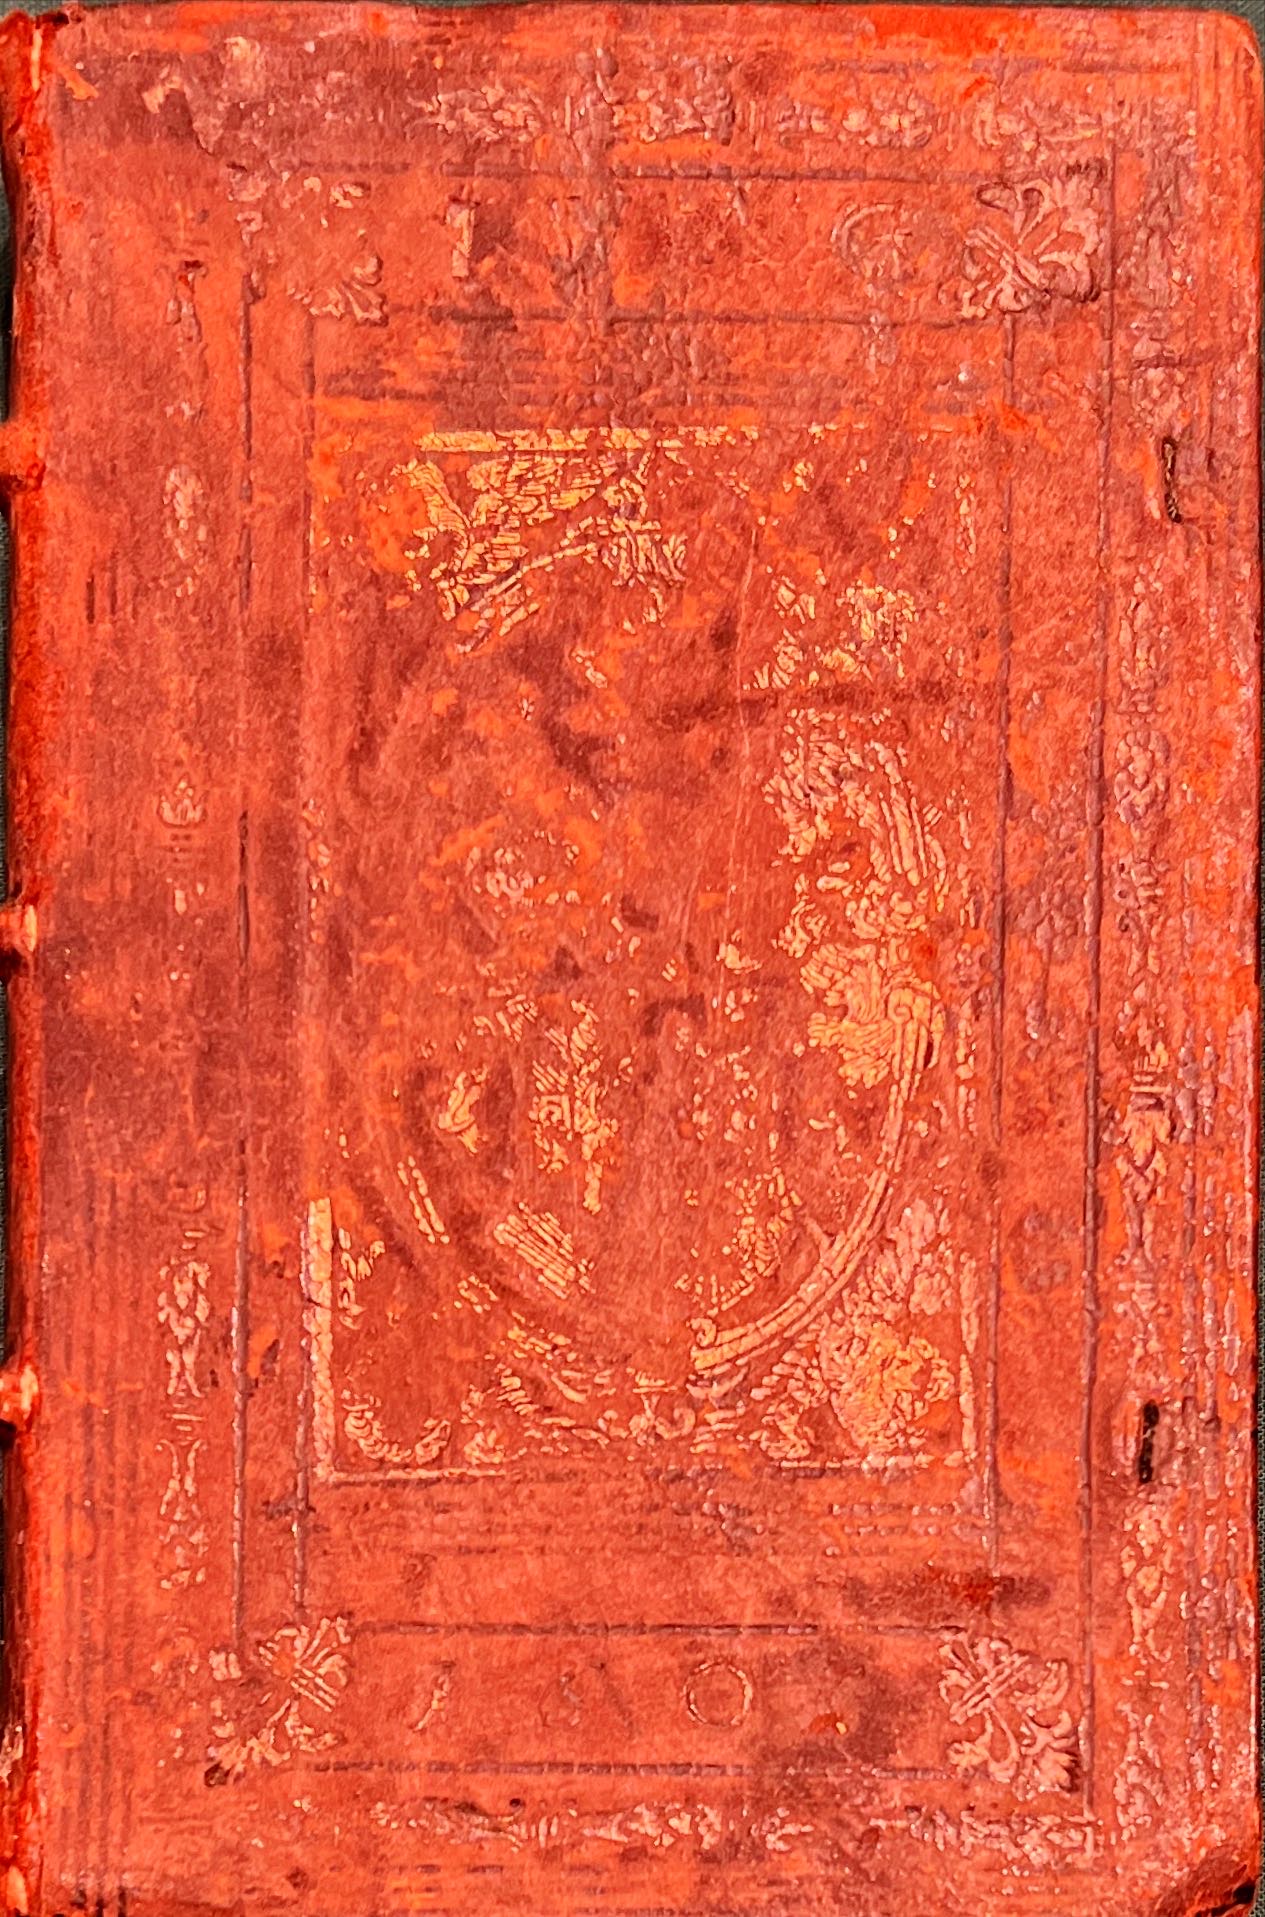 Hulsius, Levin. Impp. Romanorvm nvmismatvm series à Ivlio Caesare ad Rudolphvm I. Ffm., Selbstvig., 1603.